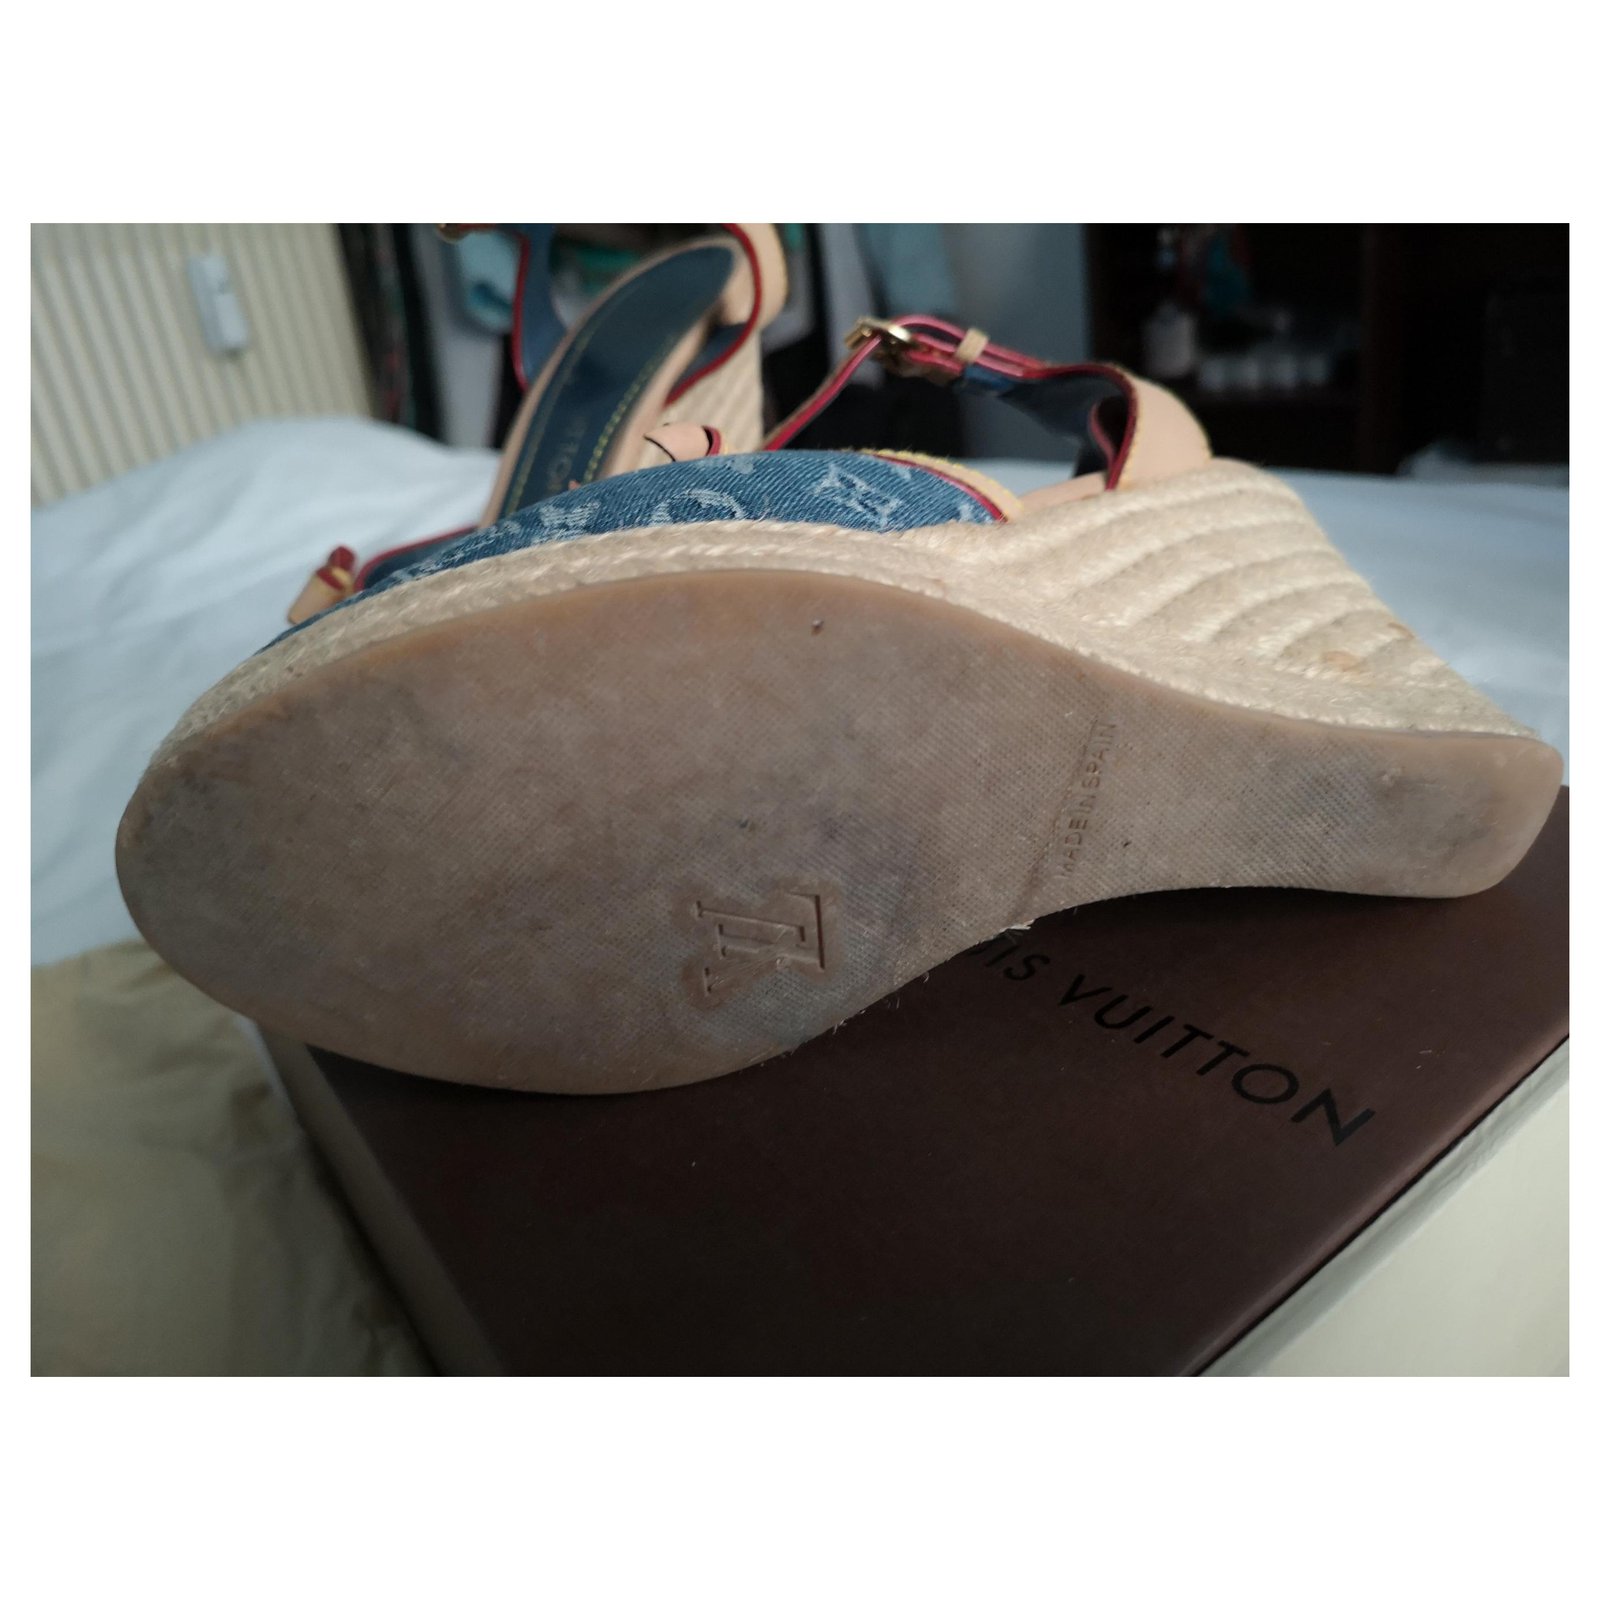 Louis Vuitton, Shoes, Louis Vuitton Denim Leather Wedge Sandal